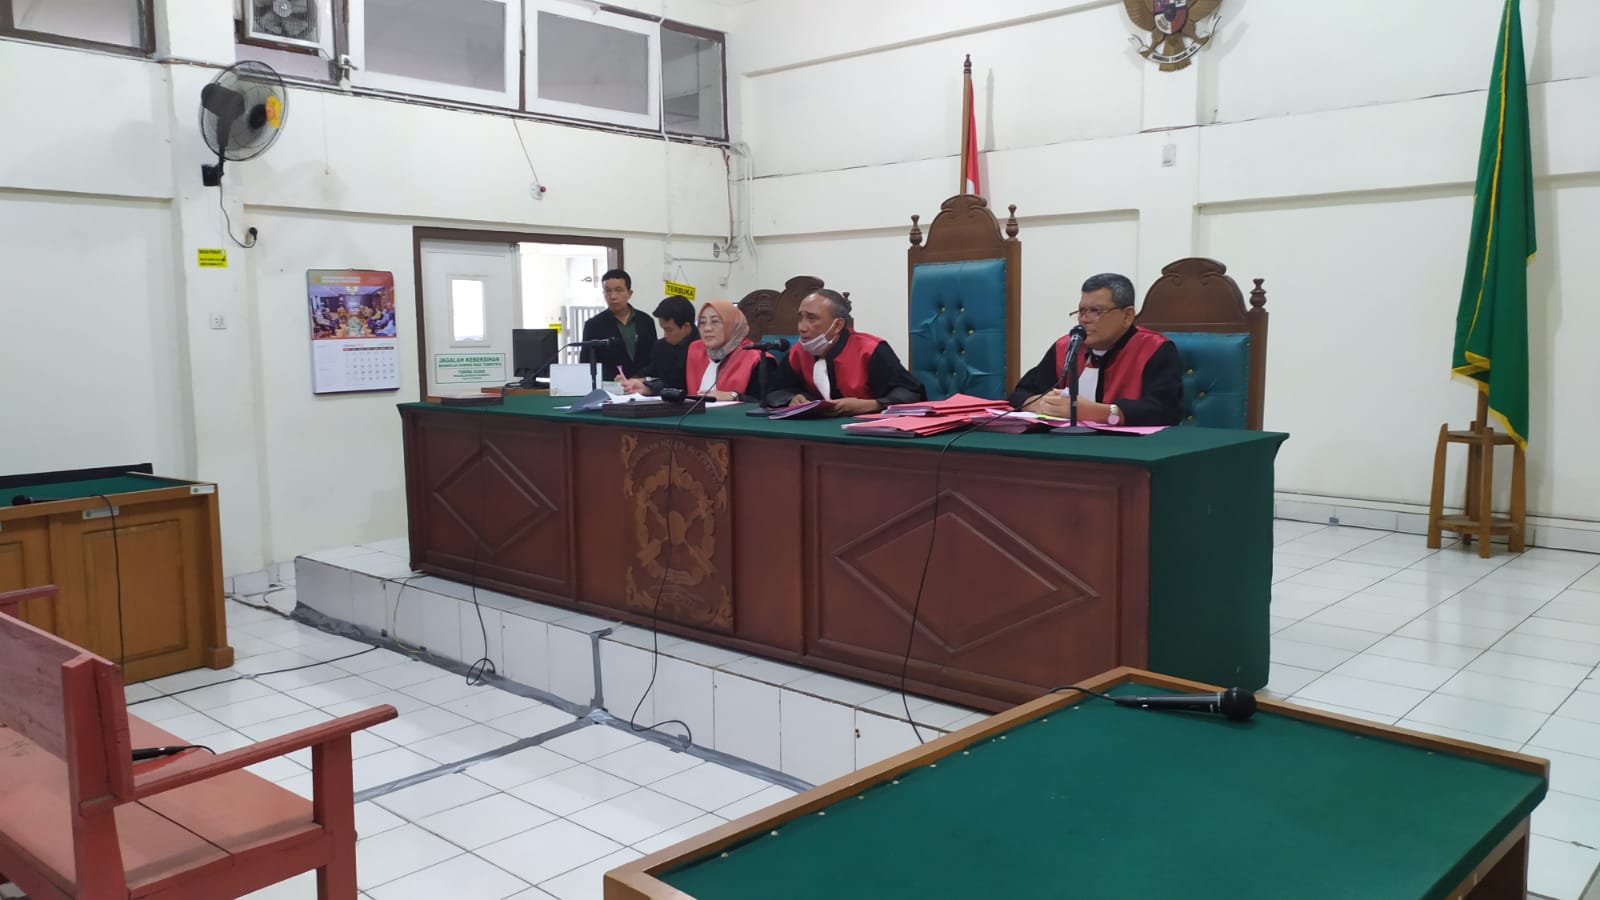   Pukul Perempuan di SPBU, Mantan Anggota DPRD Palembang Divonis 4 Bulan Penjara